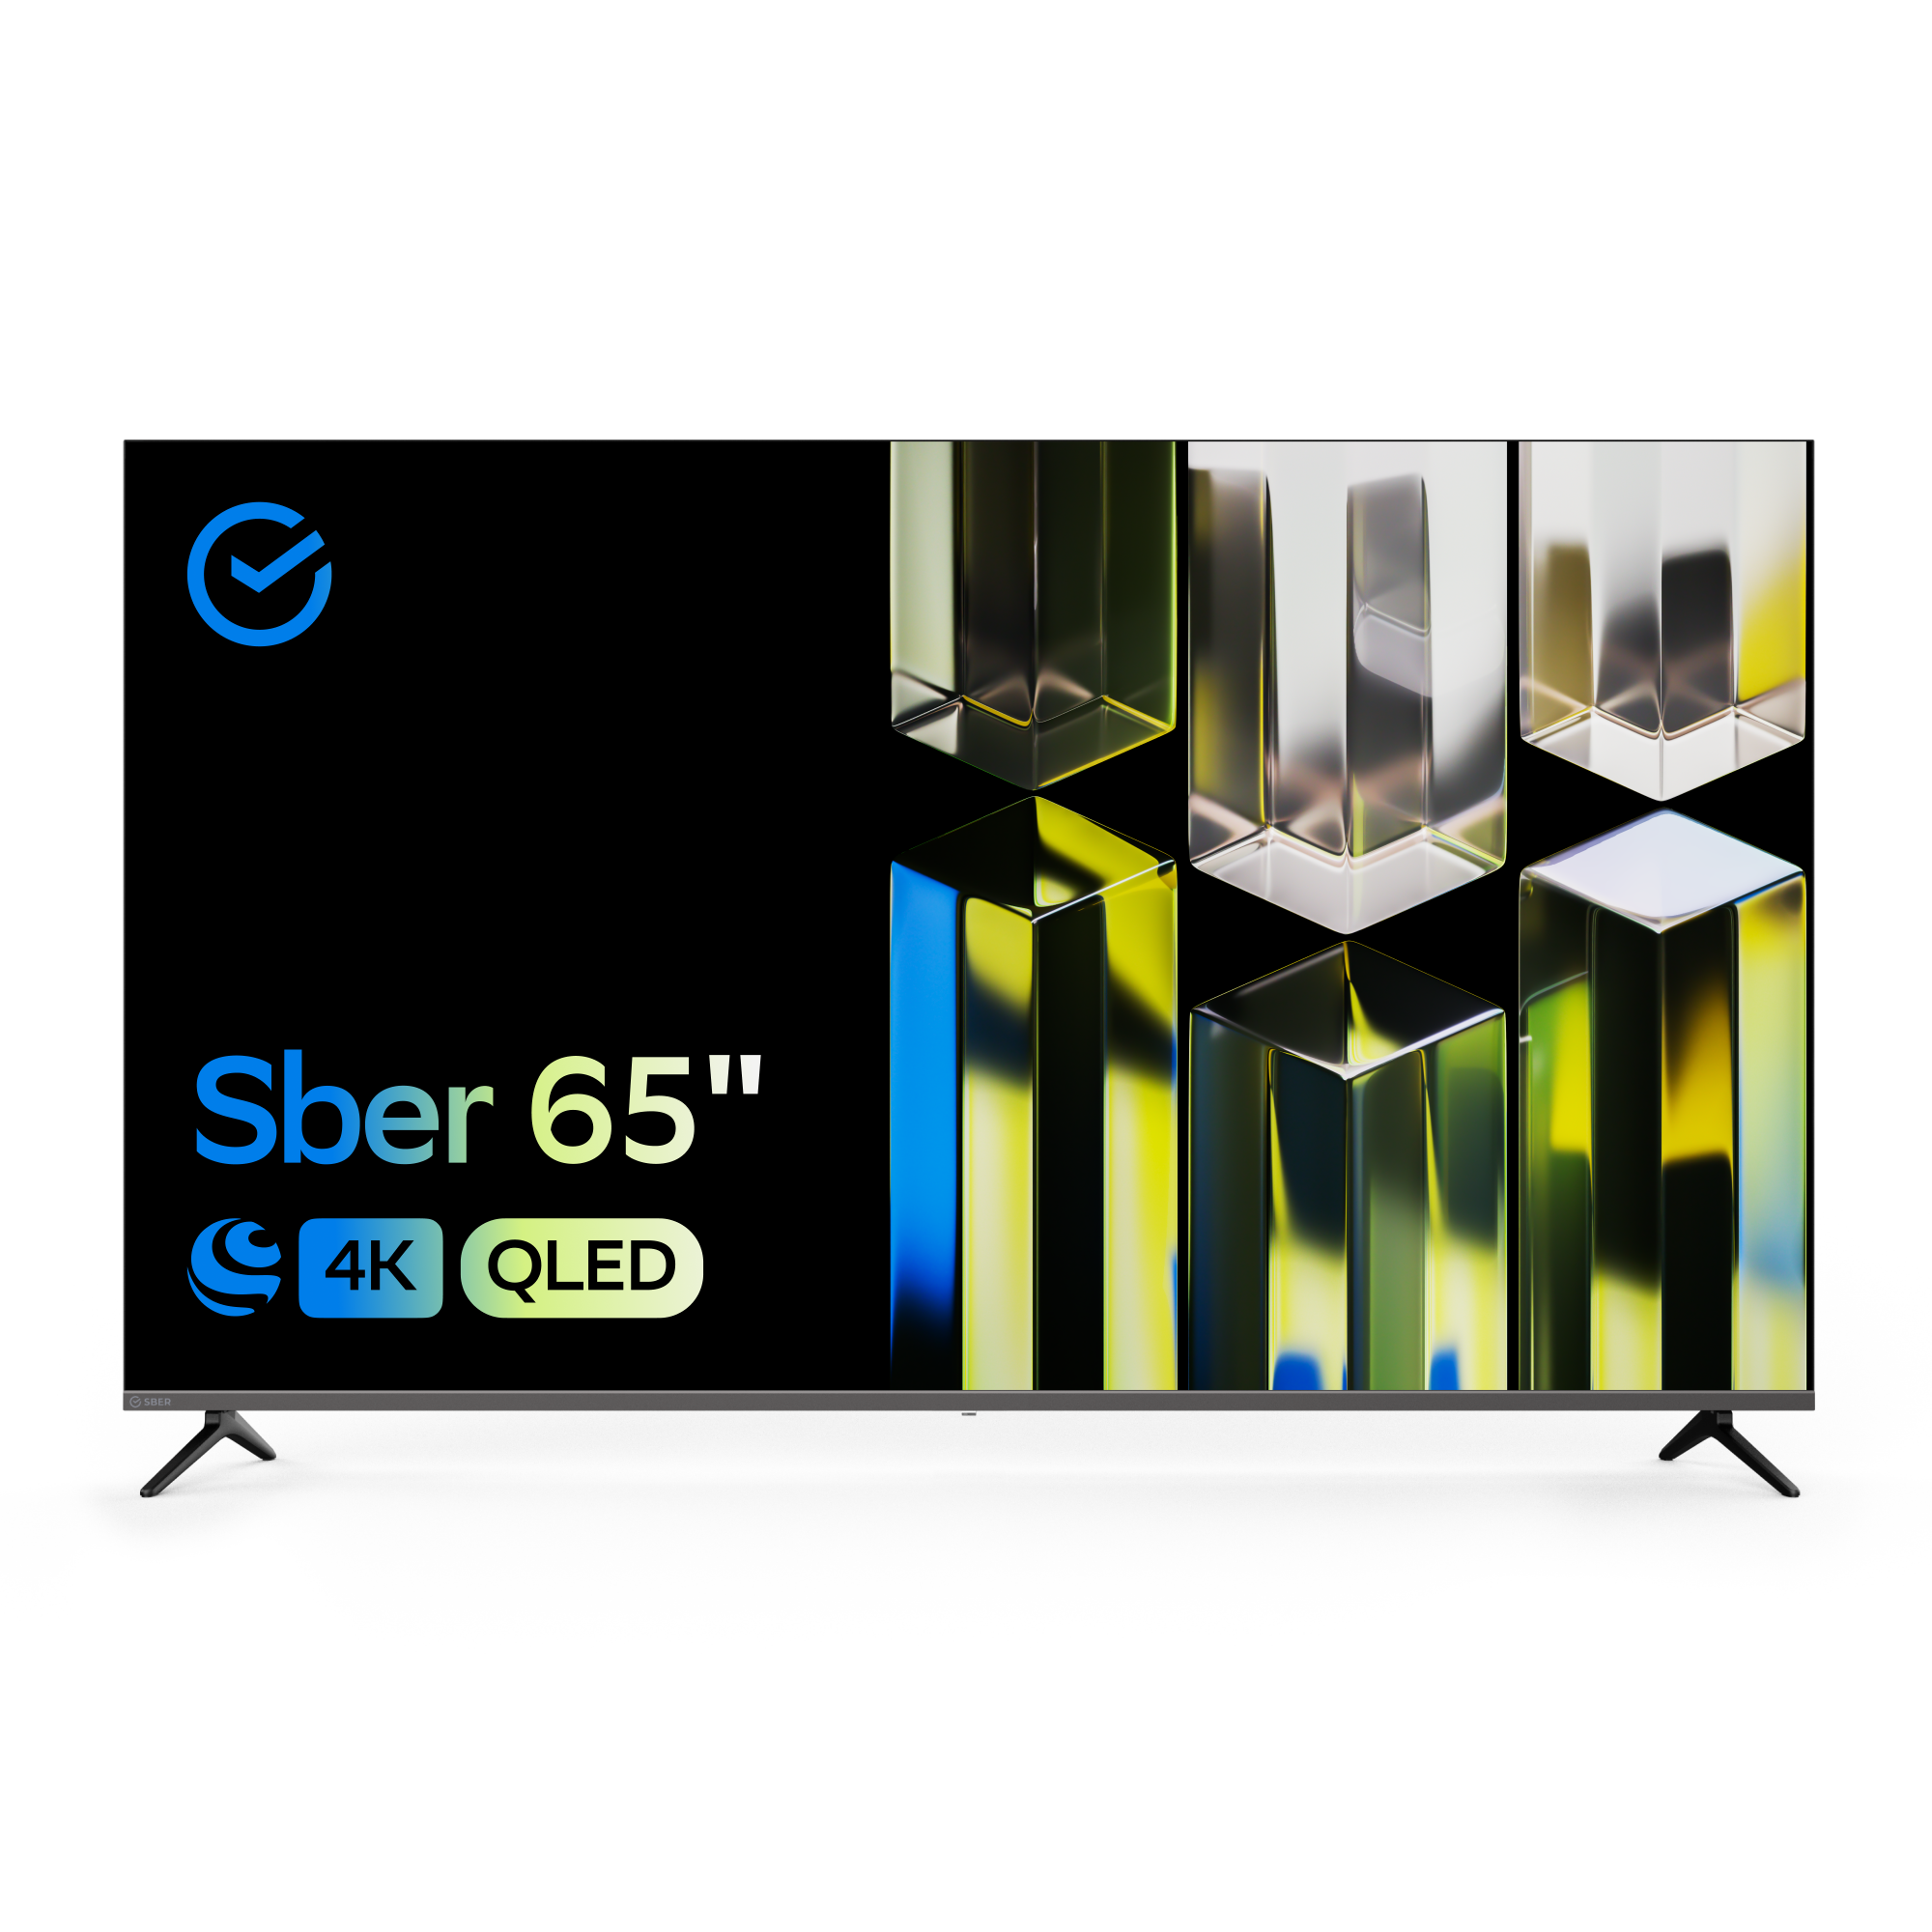 Телевизор Sber SDX-65UQ5232T, 65"(165 см), UHD 4K RAM 1,5GB, купить в Москве, цены в интернет-магазинах на Мегамаркет